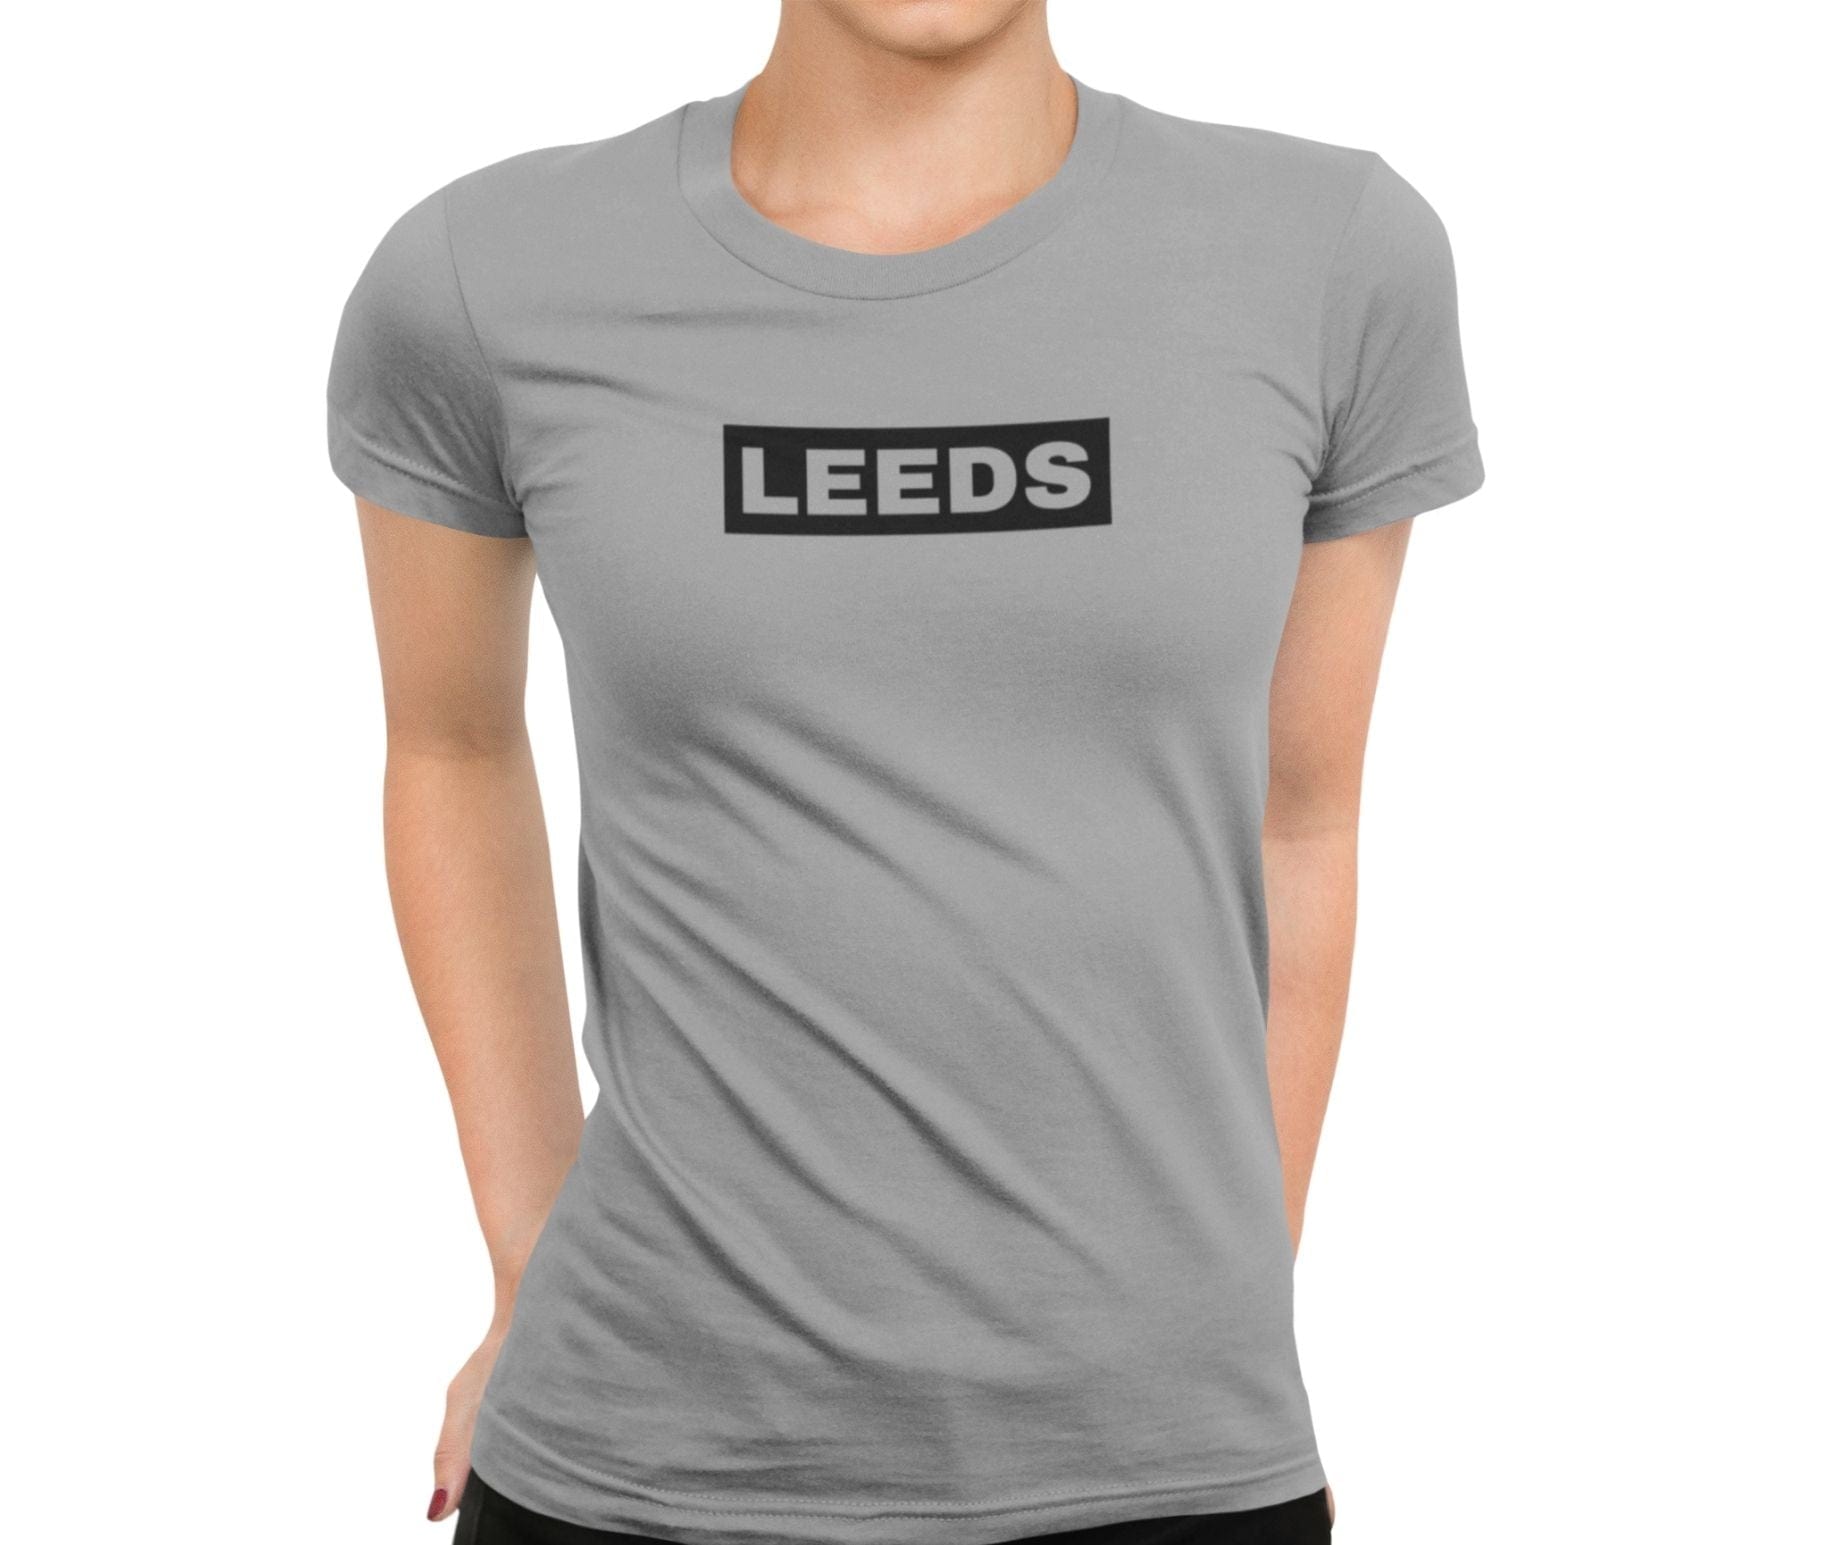 Leeds Boxtab Women's T-Shirt